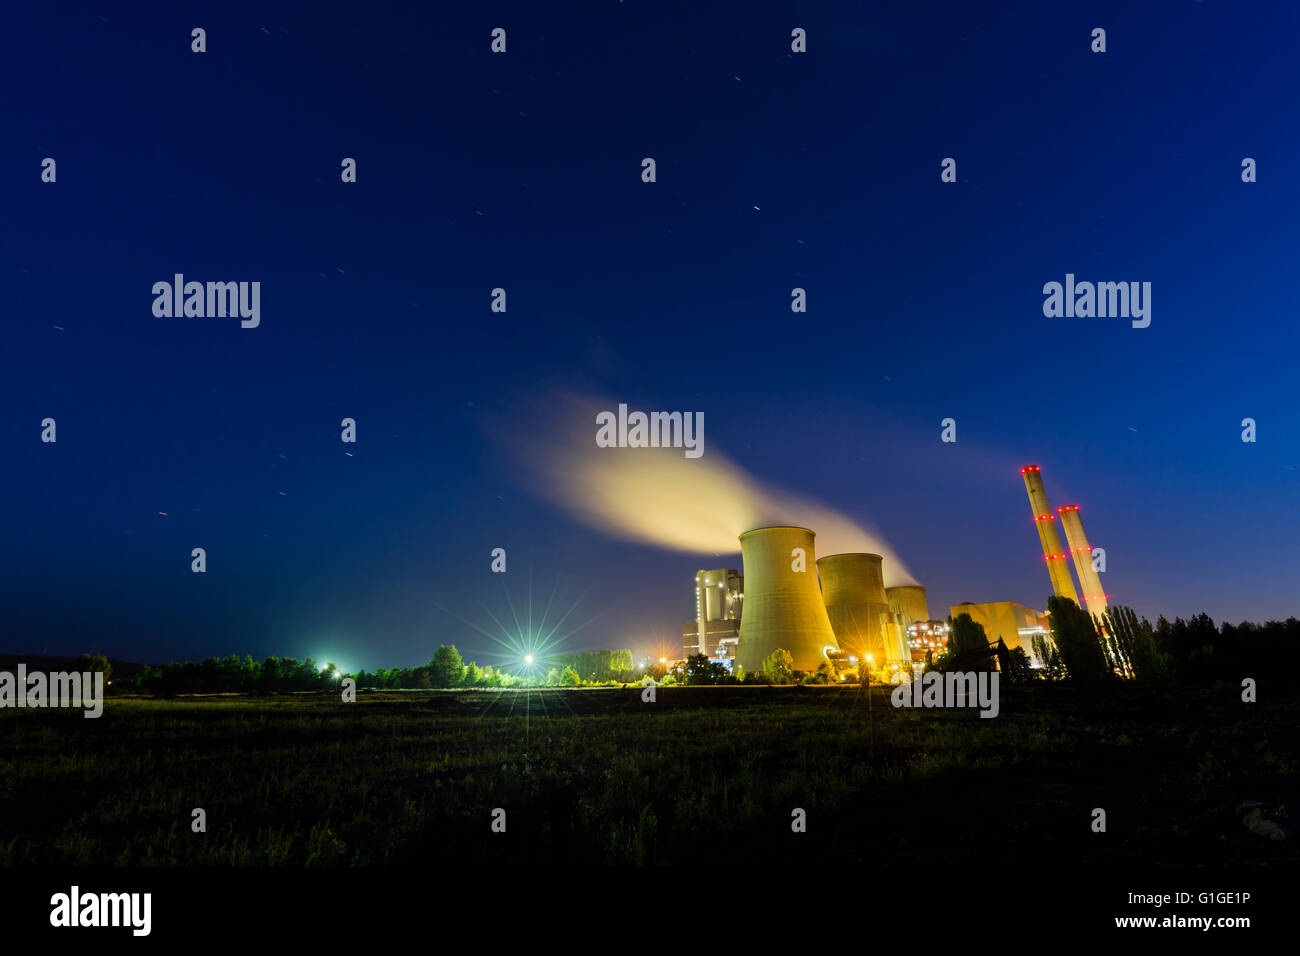 Une grande centrale électrique au charbon dans la nuit avec beaucoup de vapeur et de ciel bleu profond avec quelques star trails. Banque D'Images